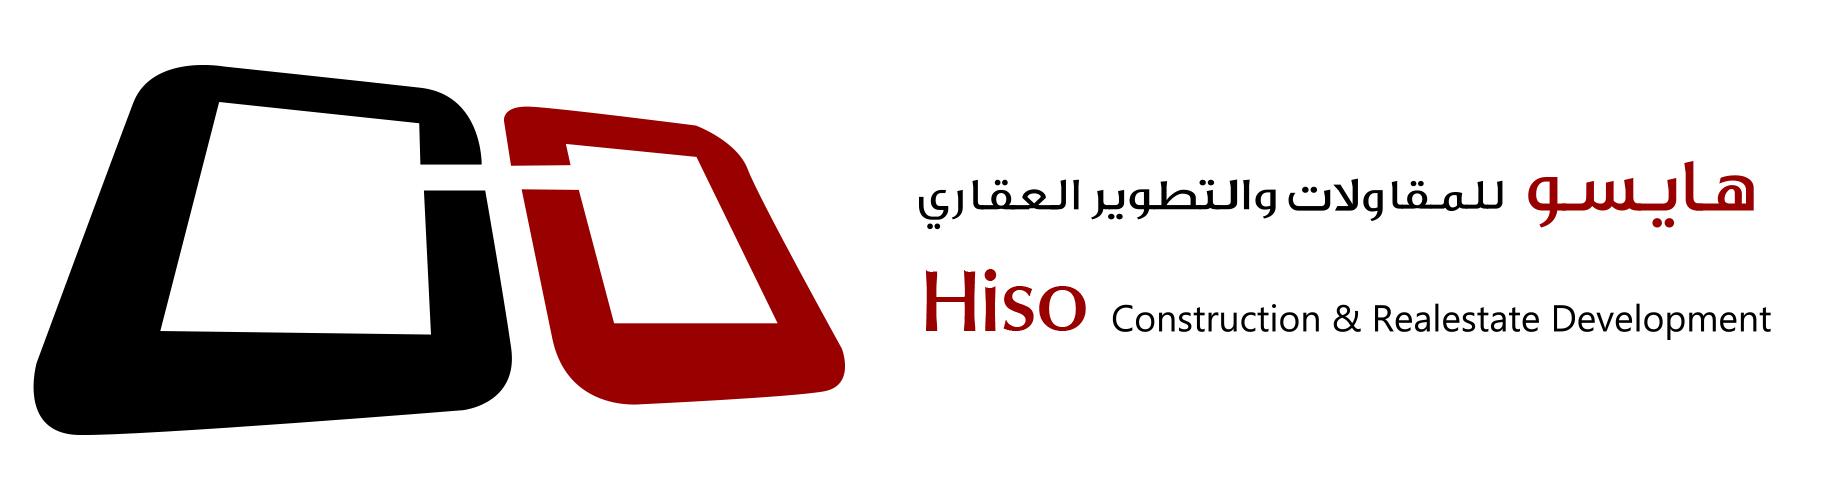 hiso logo eng